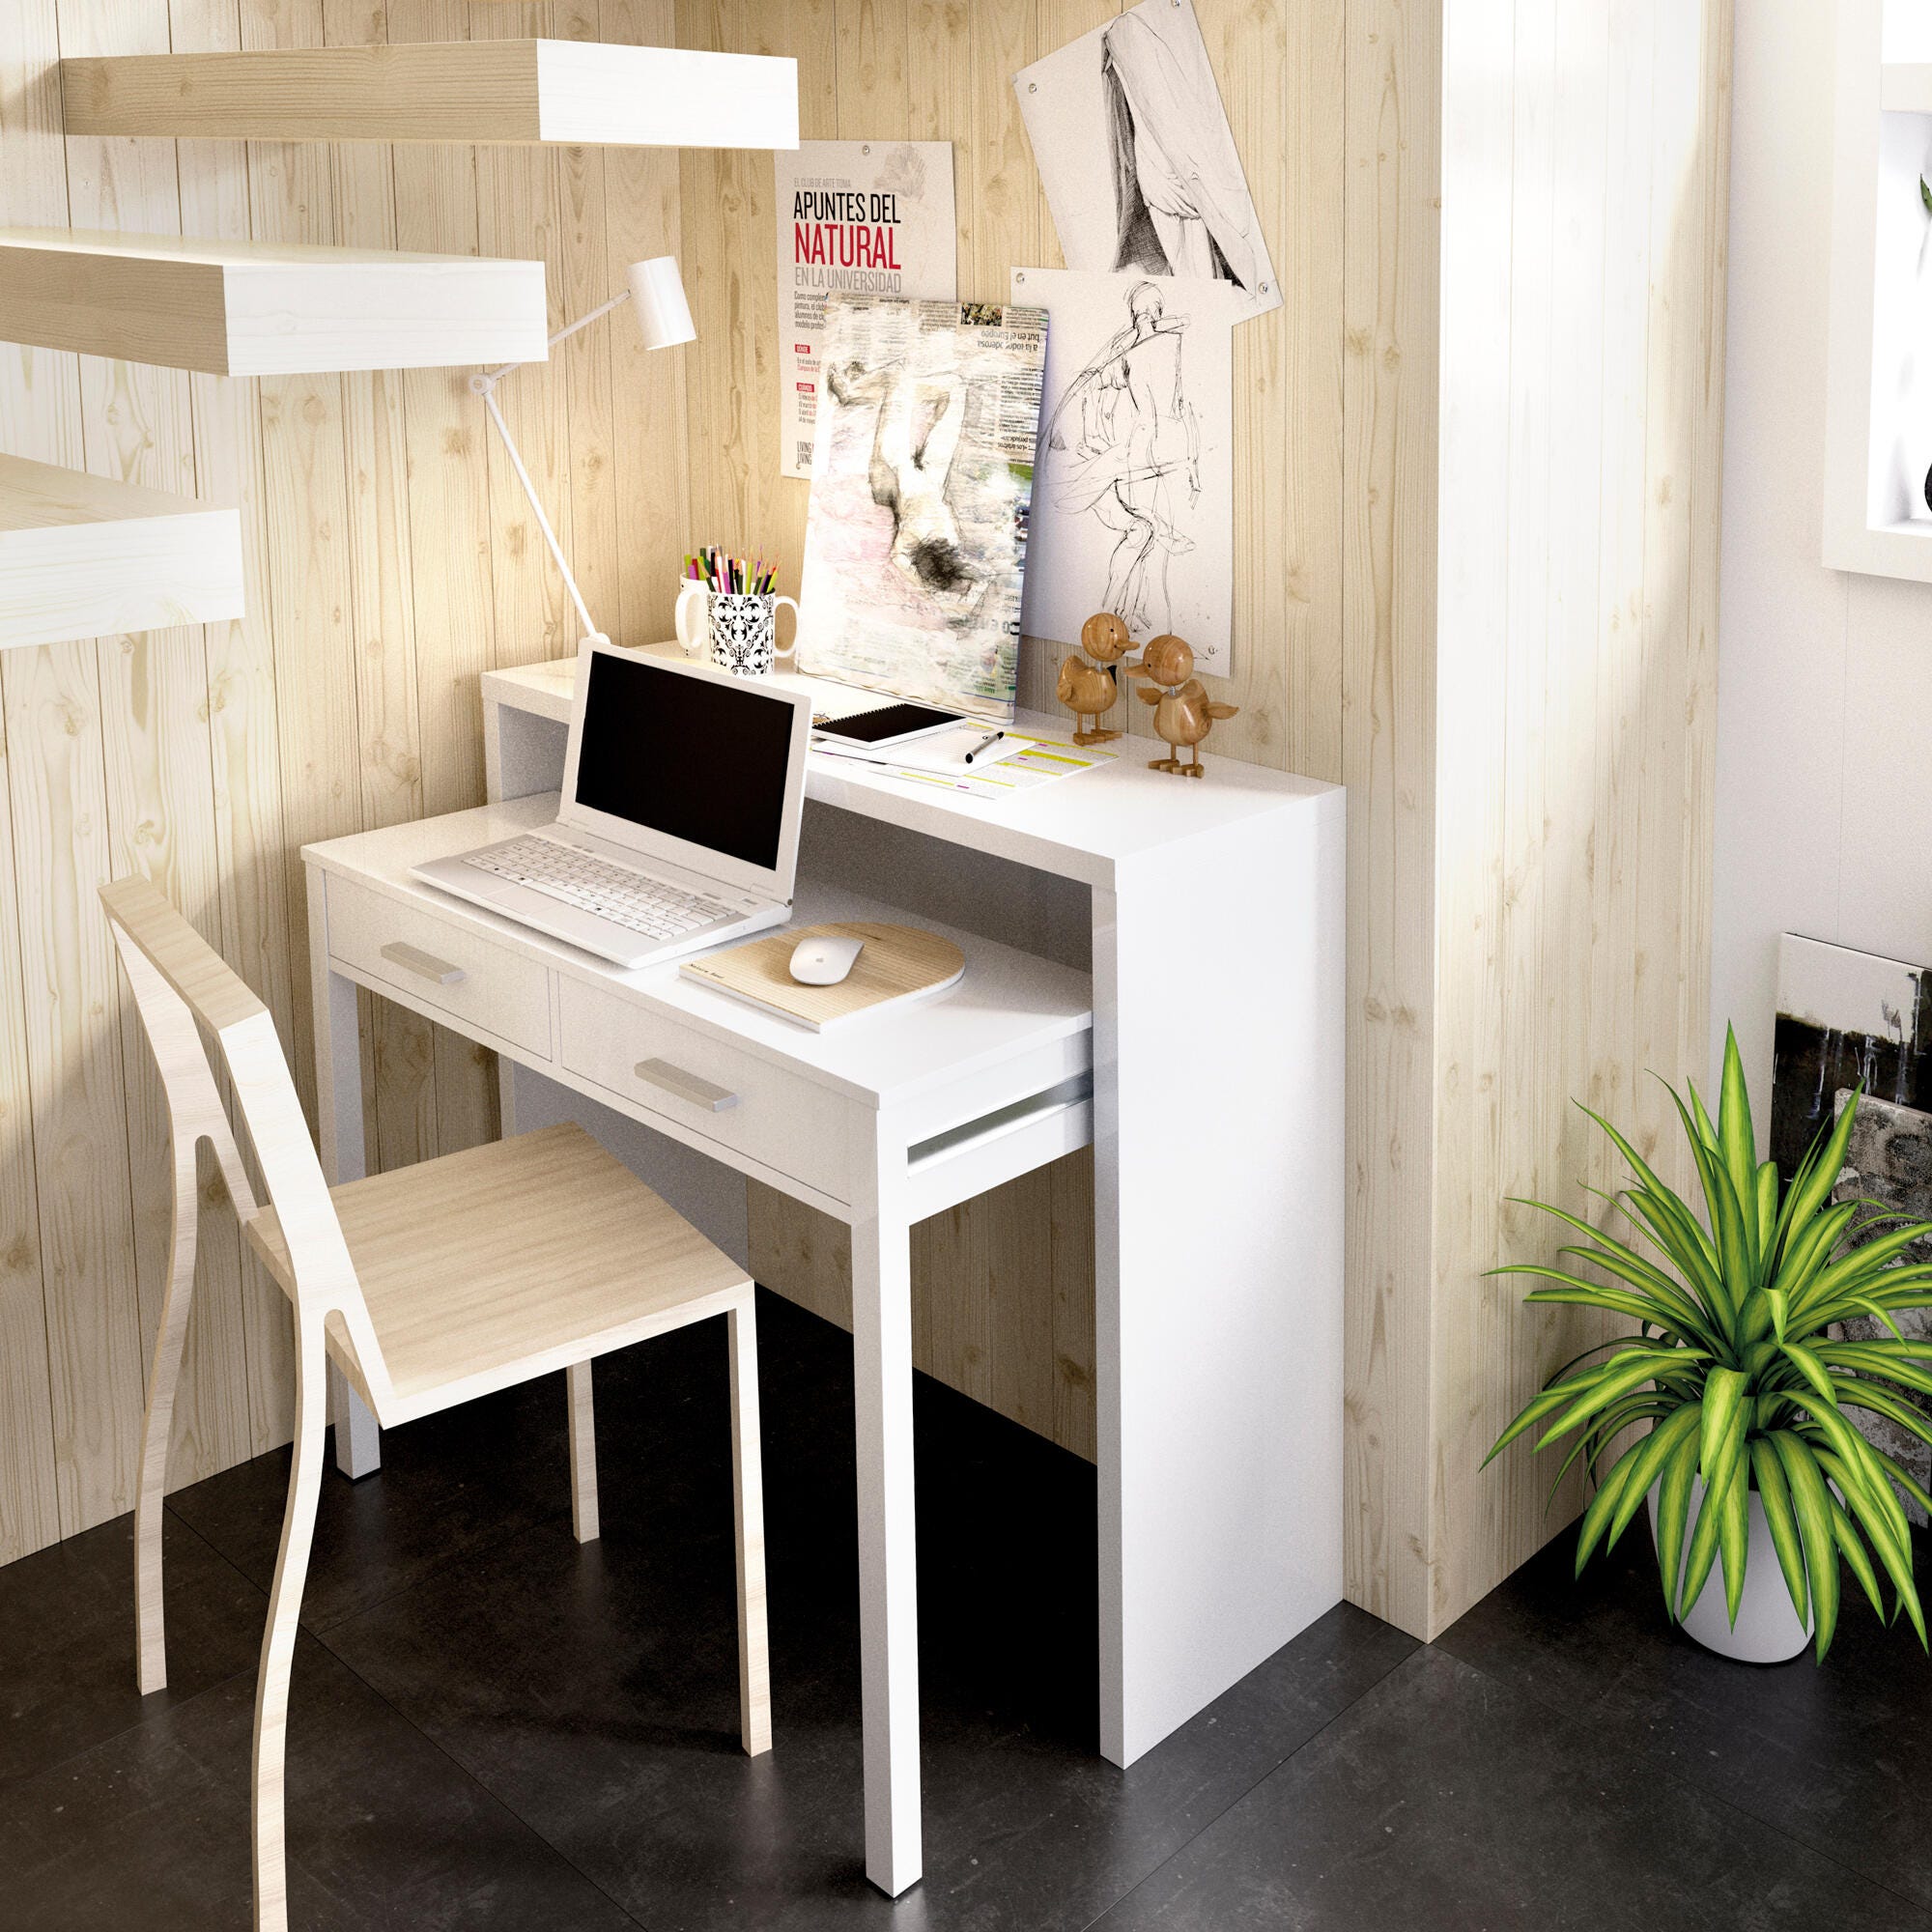 Mesa escritorio Seven blanco brillo 99x36x88 cm